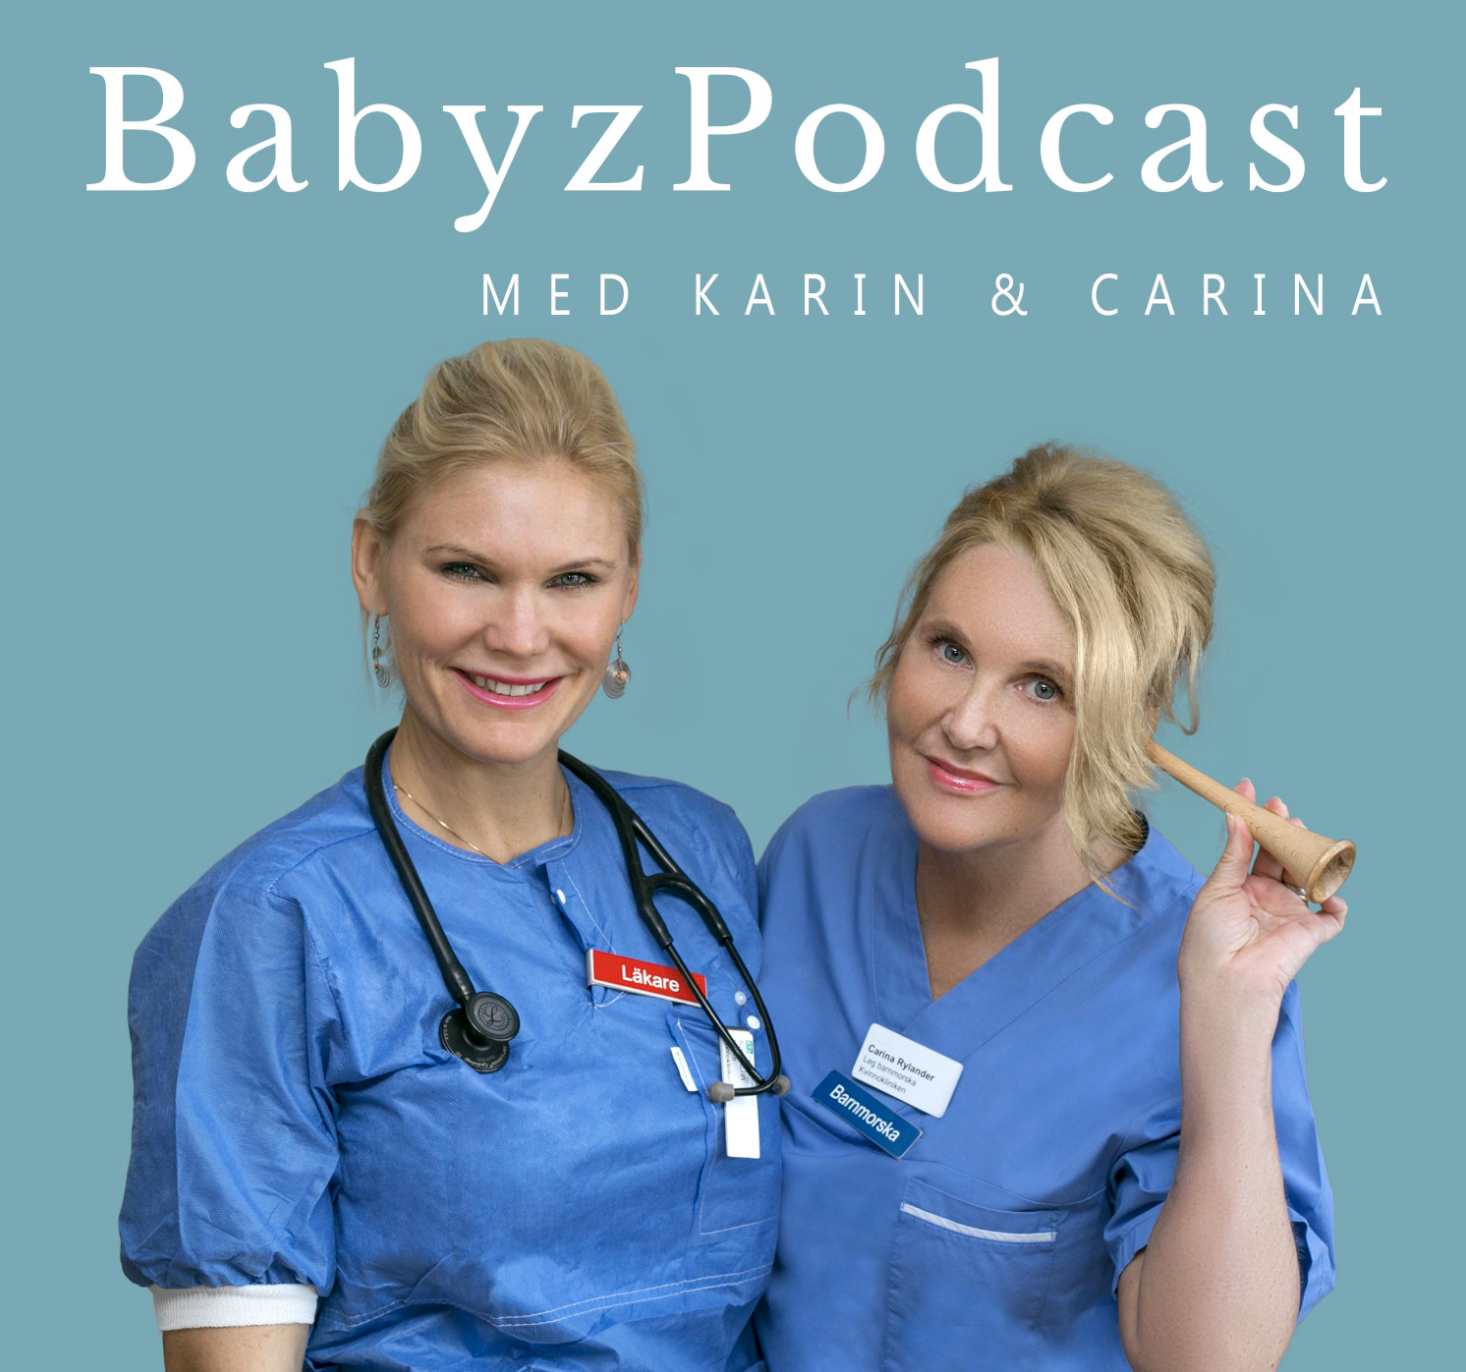 Poddcast om bäckensmärta kring graviditet del 1